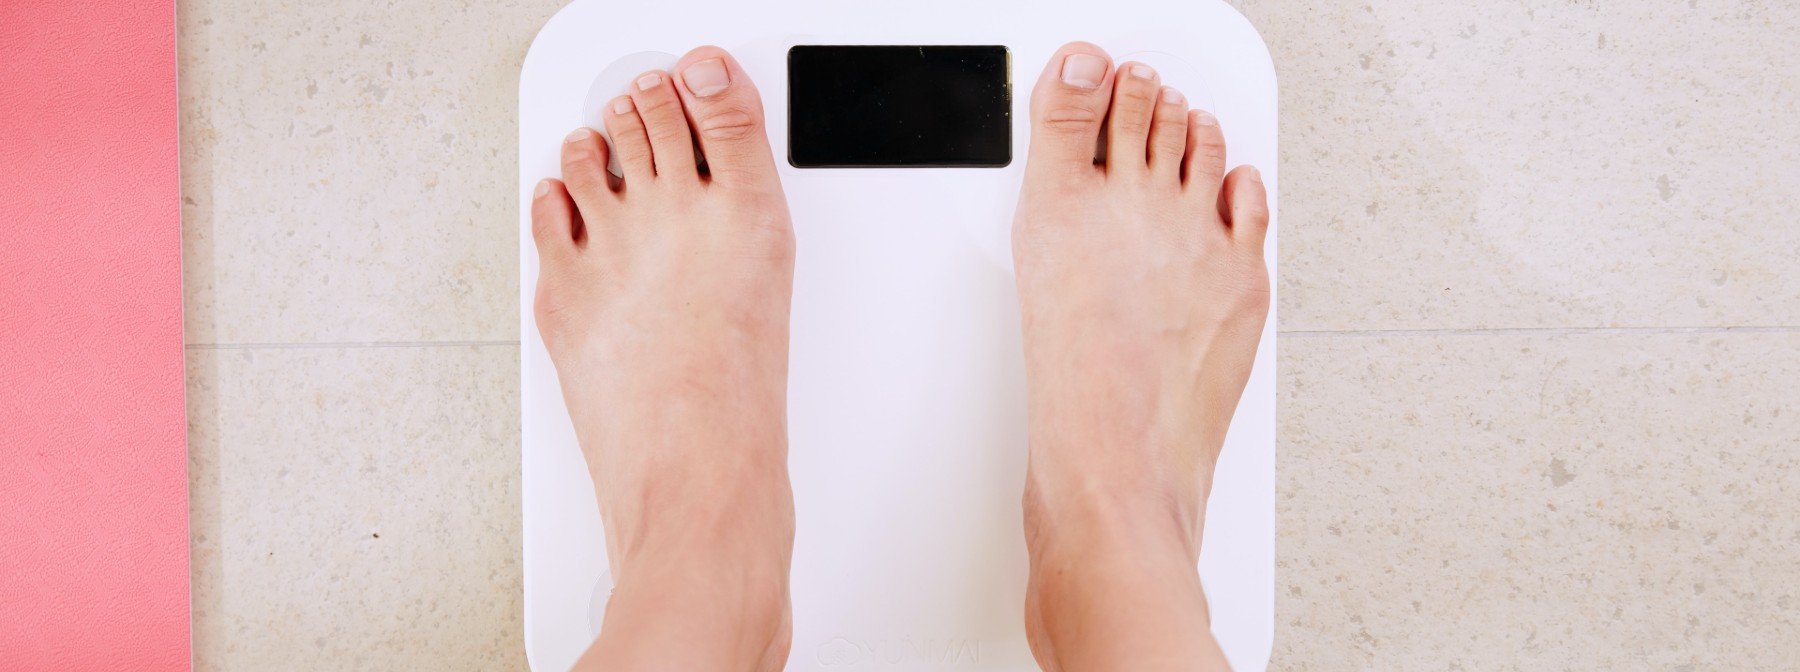 Άλλαξε τη σχέση σου με τη ζυγαριά για επιτυχία στην απώλεια βάρους